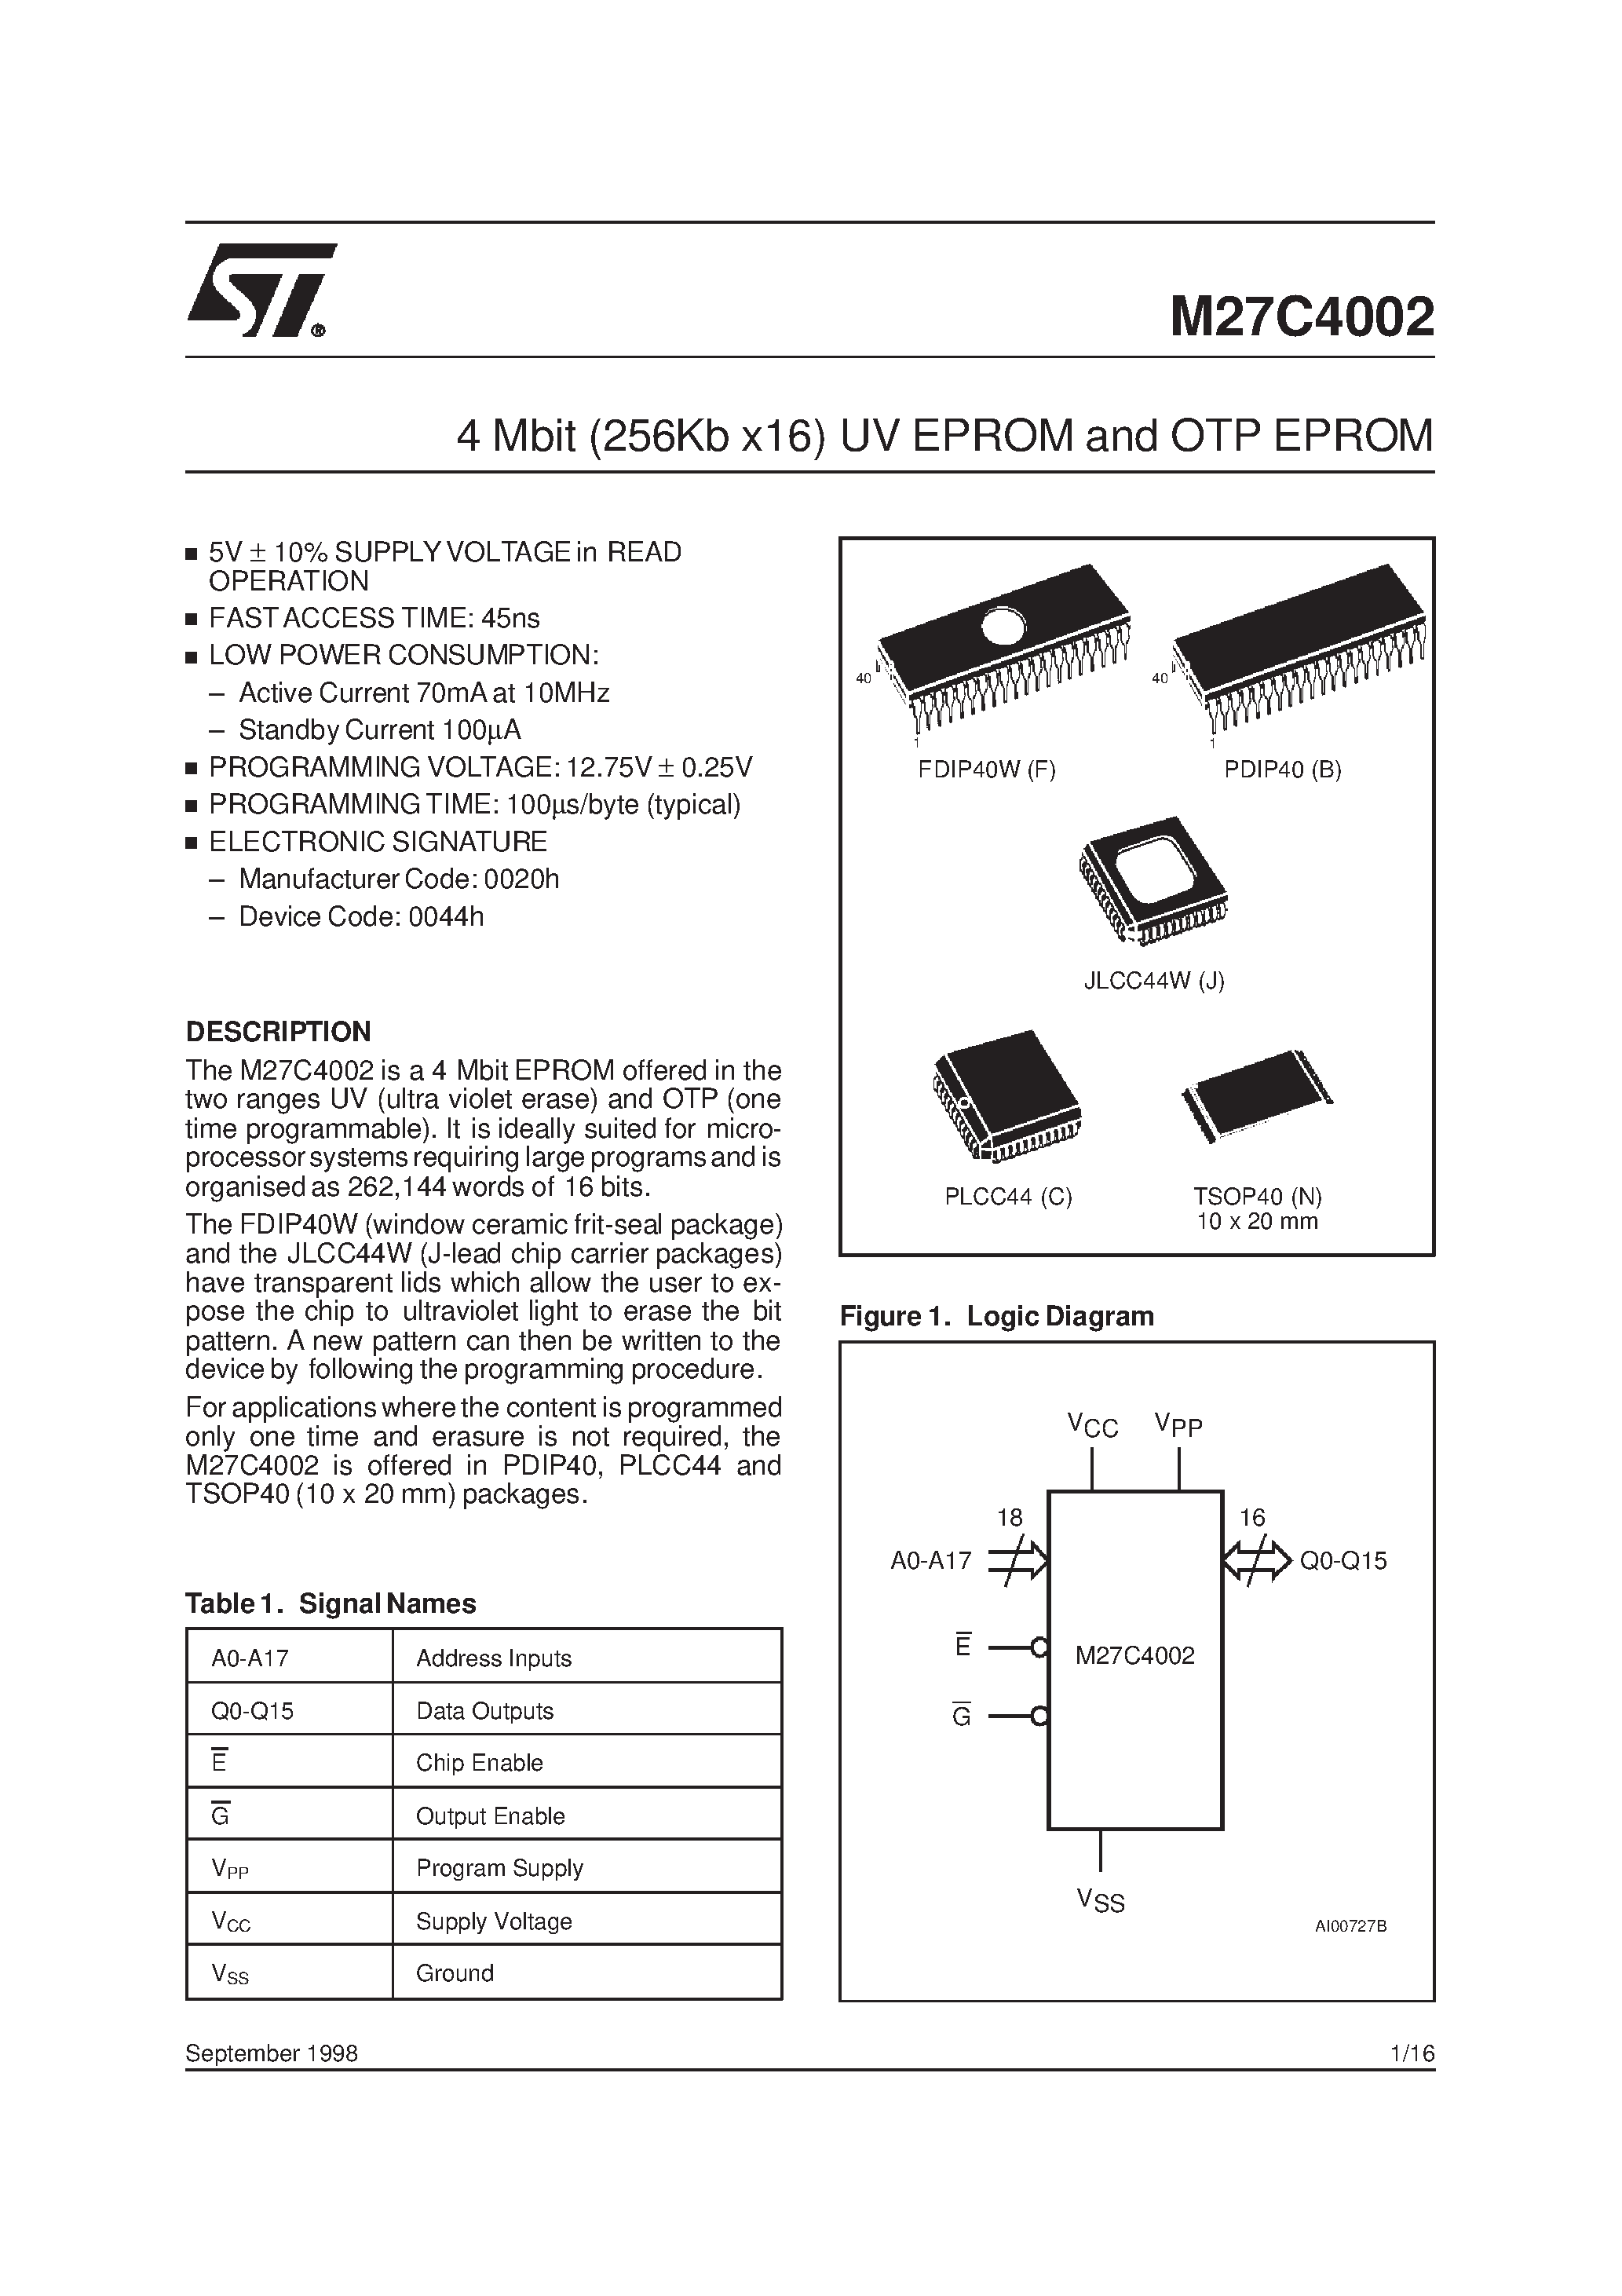 Datasheet M27C4002-10XC6X - 4 Mbit 256Kb x16 UV EPROM and OTP EPROM page 1